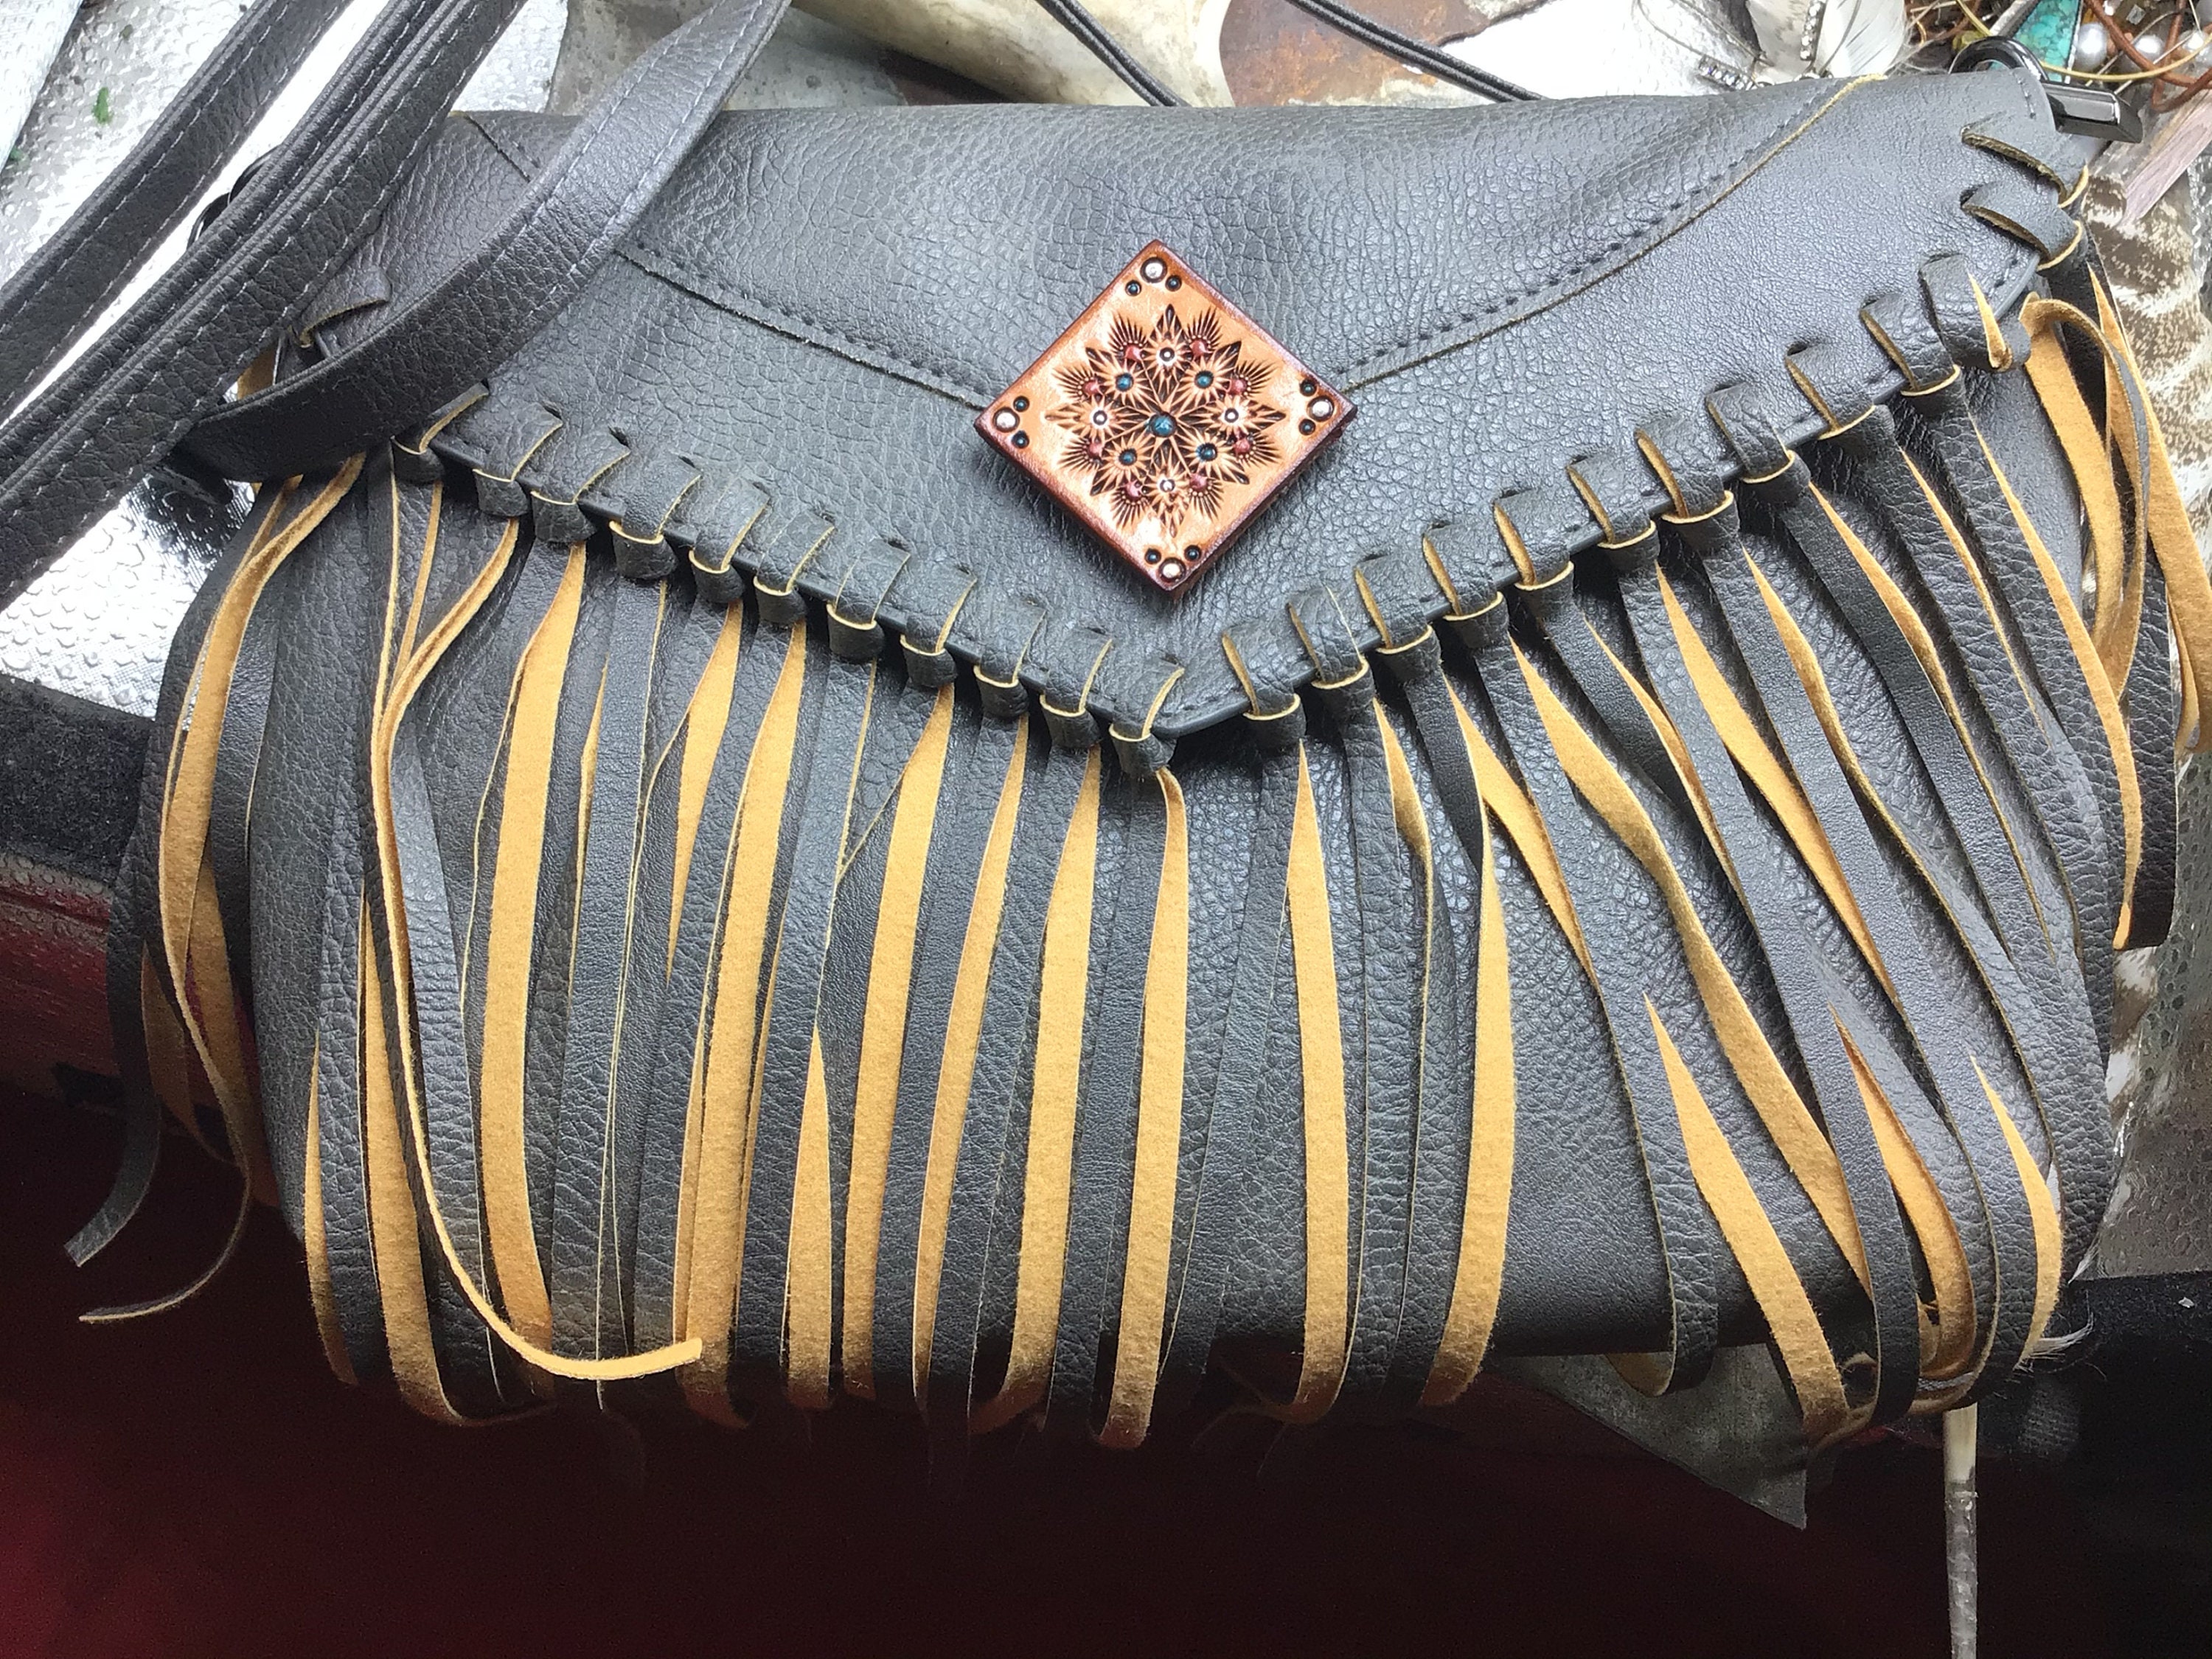 Handmade Boho Leather Fringe Crossbody Purse Western Purses with Fringe for Women